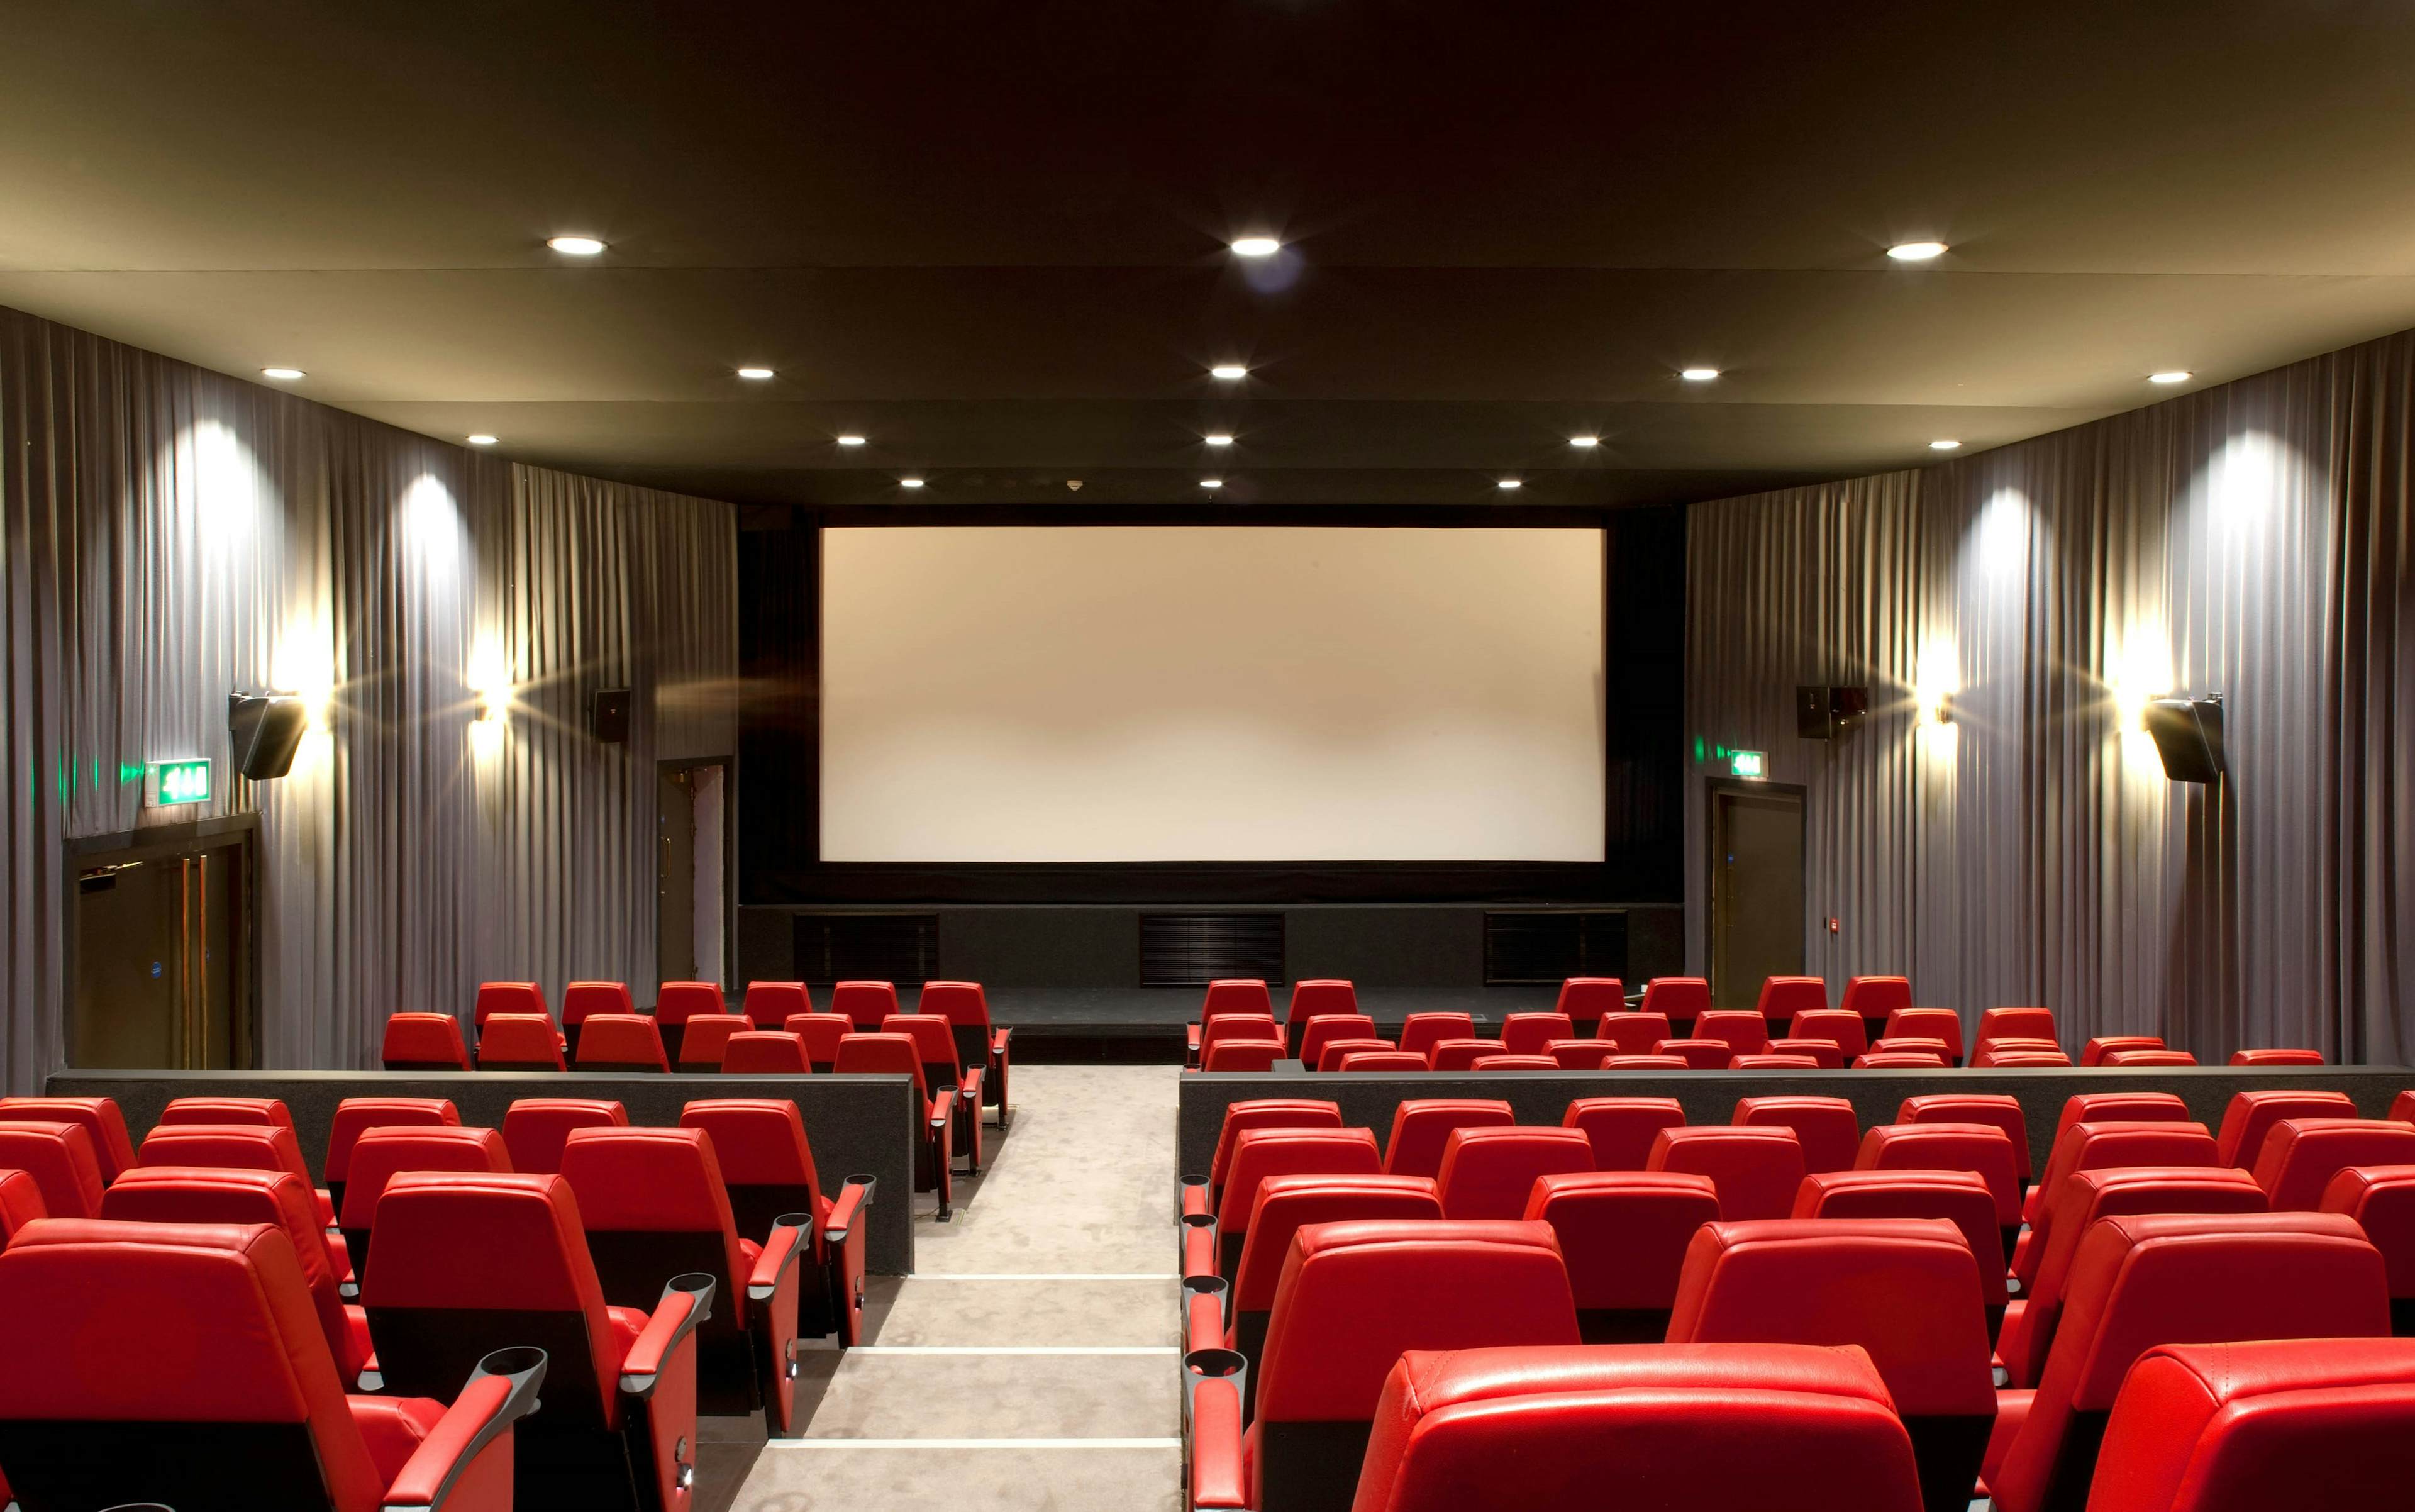 Barbican Centre - Cinemas 2 & 3 image 1